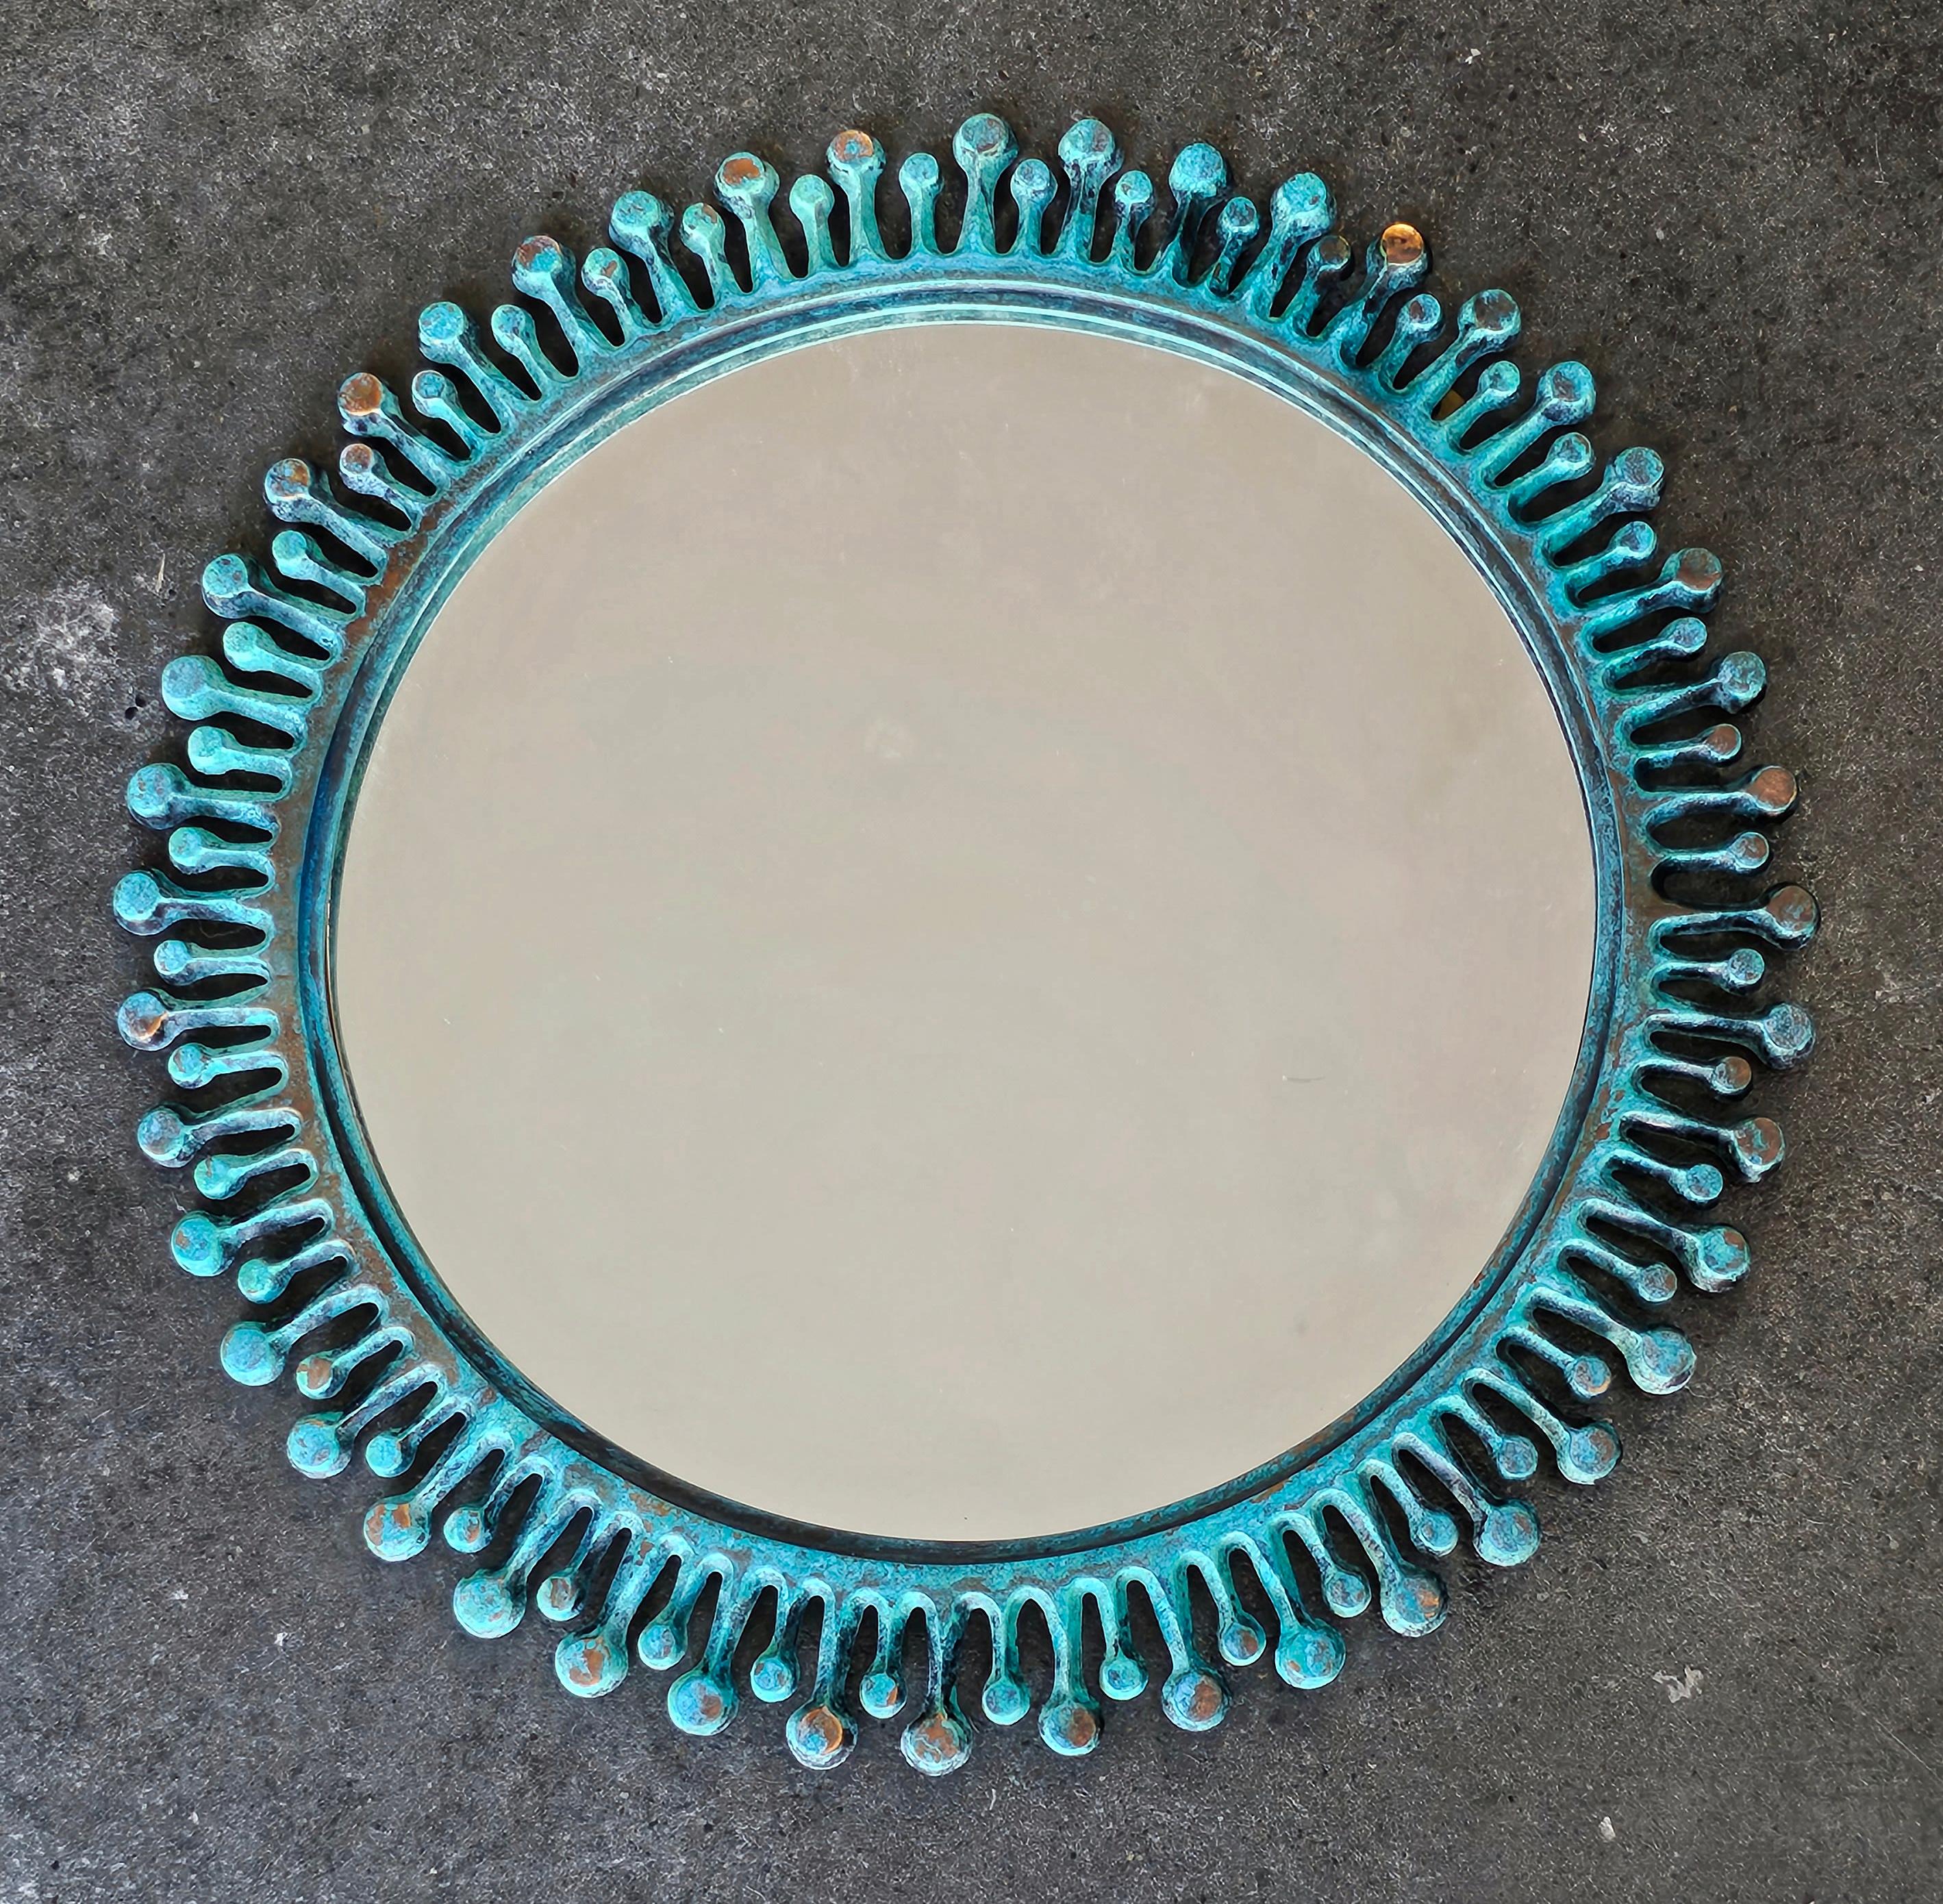 In diesem Angebot finden Sie einen vintique (oder antiken) Sunburst Spiegel. Sie ist aus Bronze gefertigt und weist eine starke grün/blaue Patina auf, die durch Oxidation entstanden ist. Aufgrund der ungleichmäßig verteilten Patina ist es schwer,